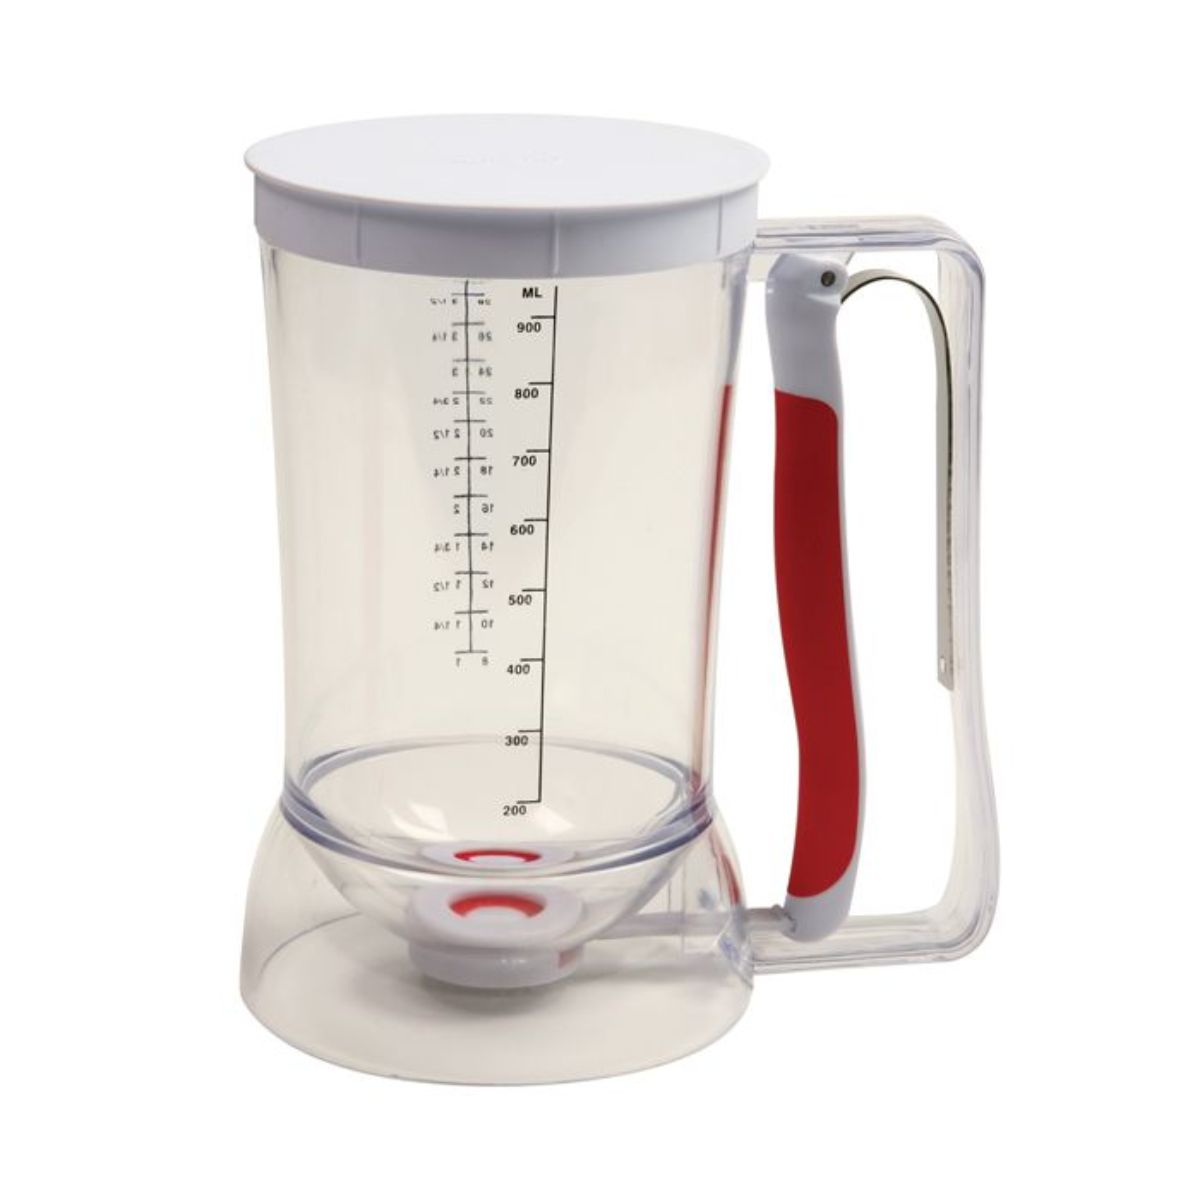 1pc Batter Dispenser Funnel With Measuring Cup, Handheld Divider For Baking